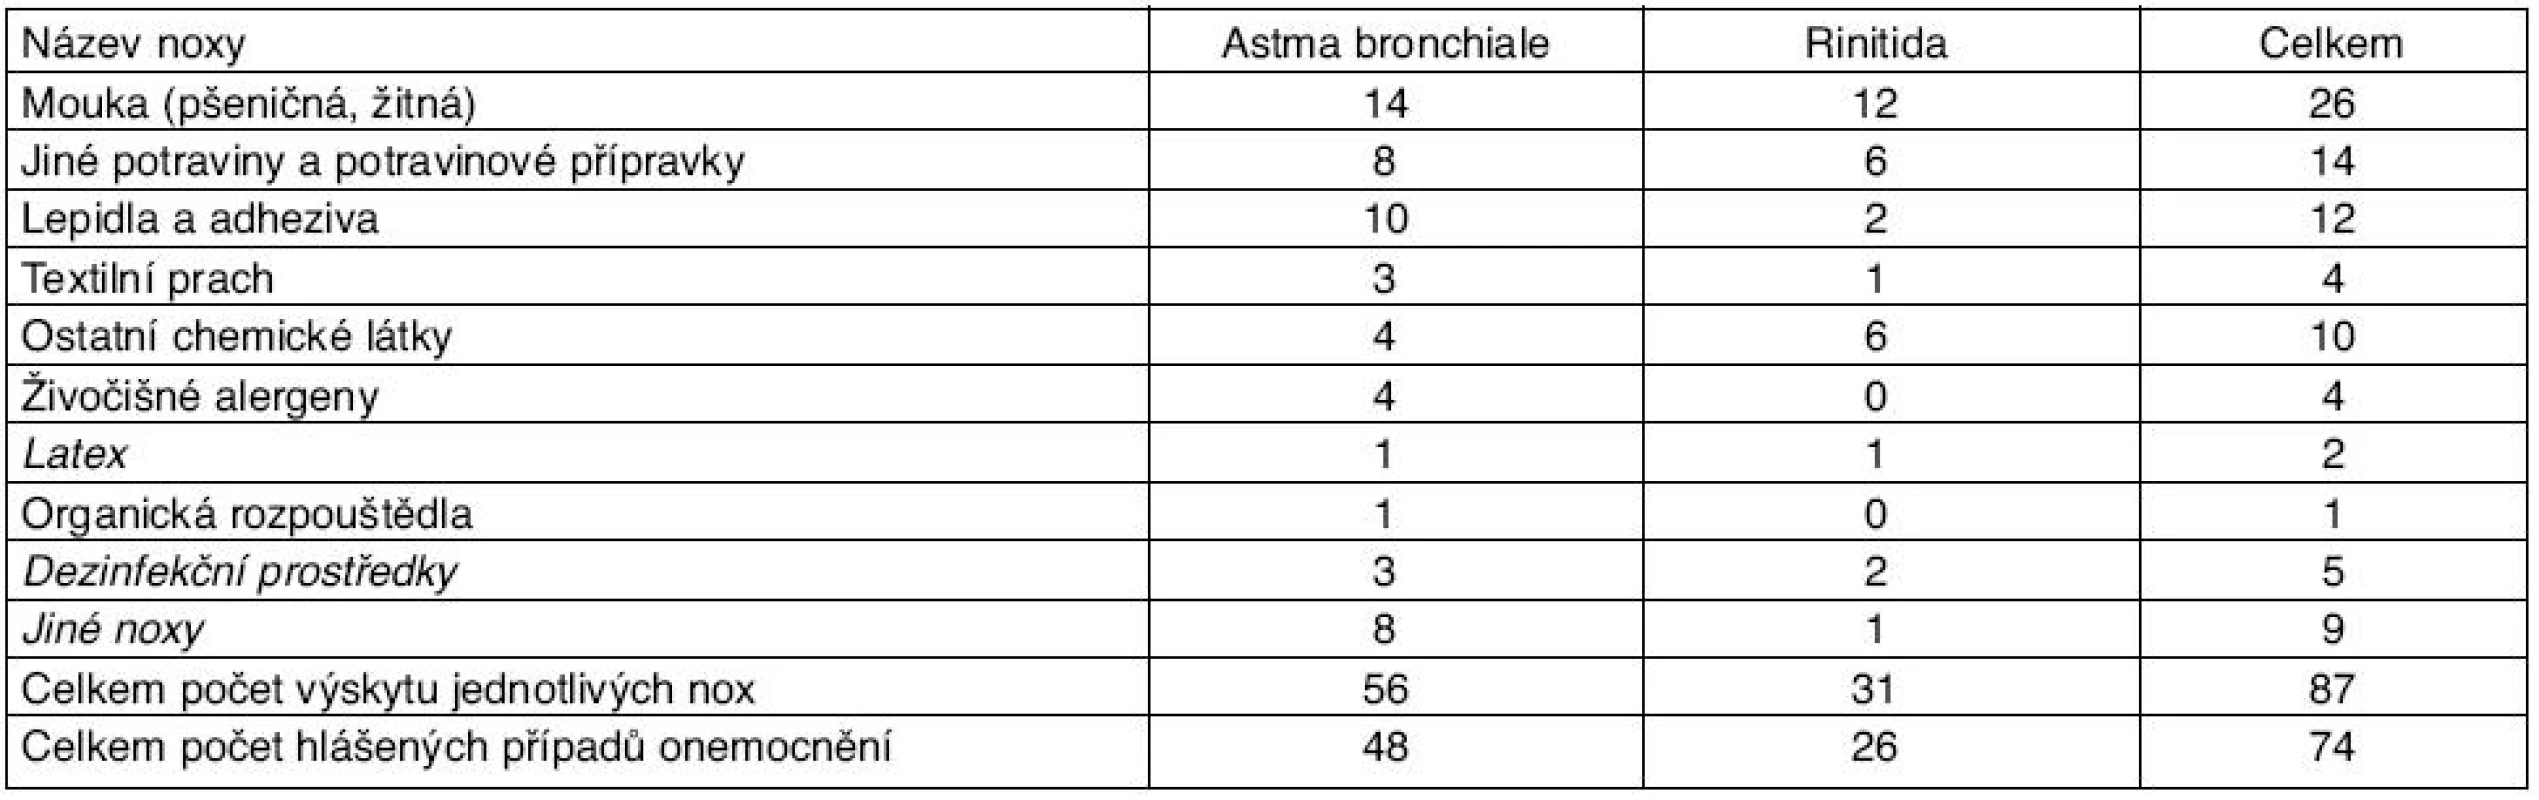 Vyvolávající noxy u profesionálních astmat a alergických rinitid hlášených v roce 2009
